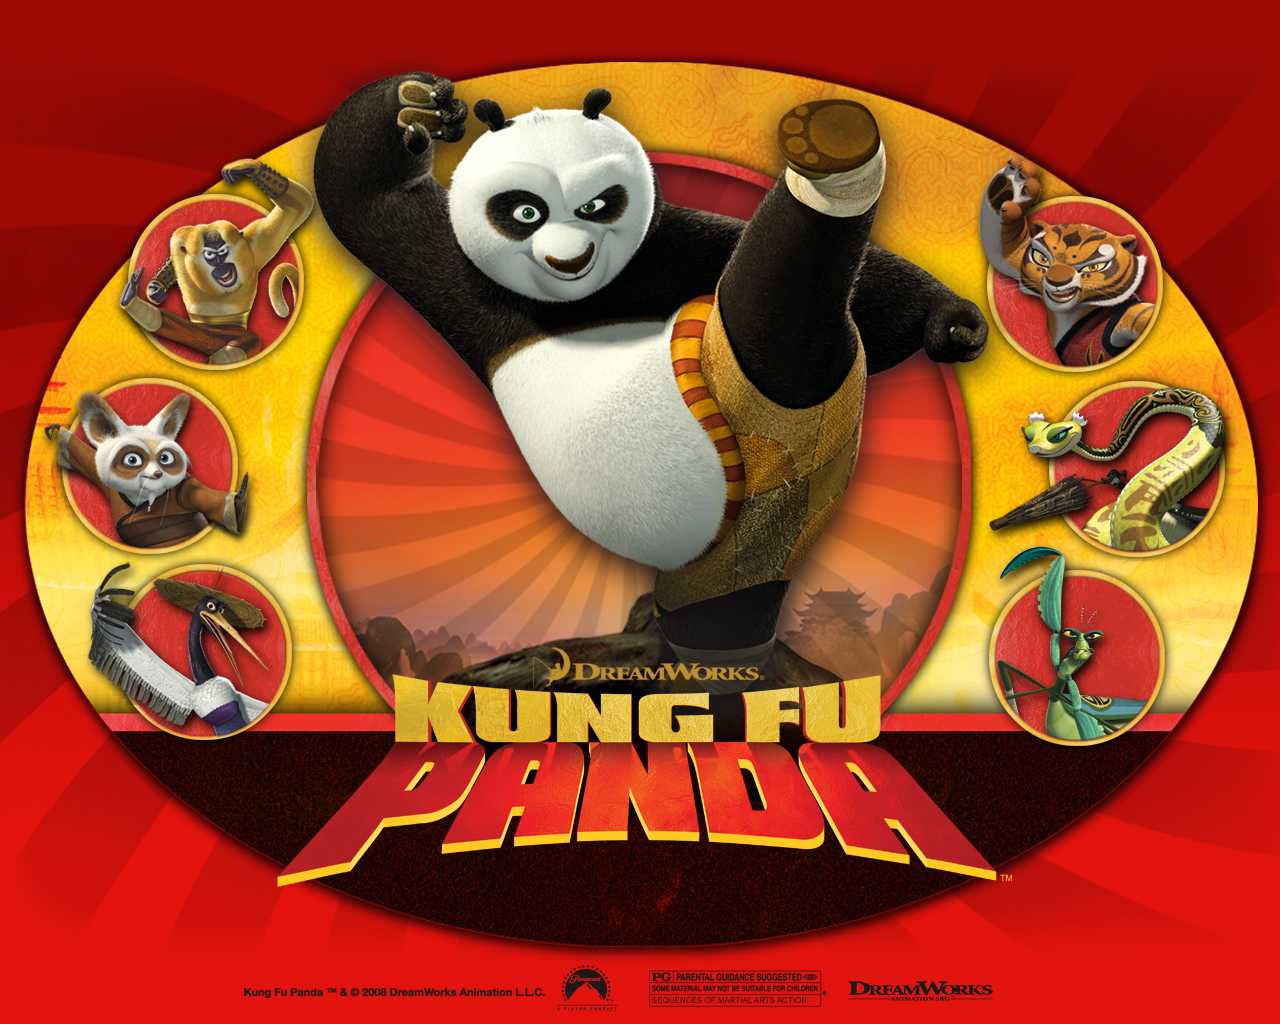 Foto Kartun Gambar Kung Fu PandaOur Reading World